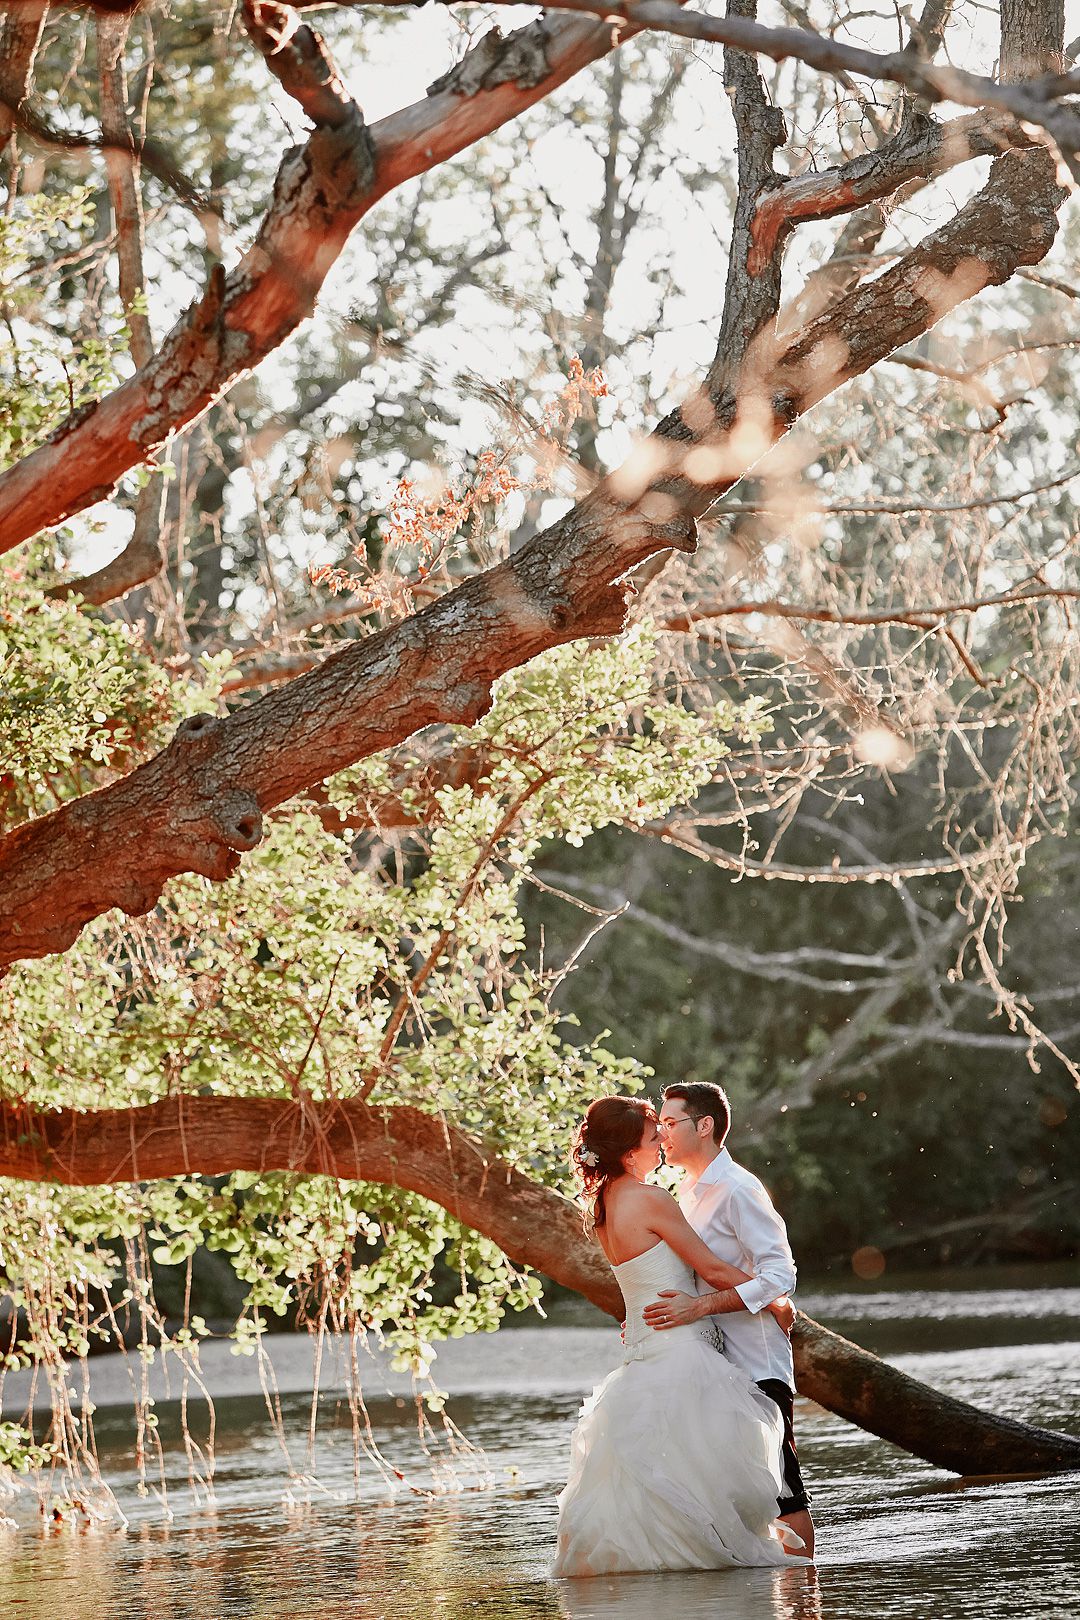 Las mejores fotos de boda en madrid los jardines del alberche 17 jpg